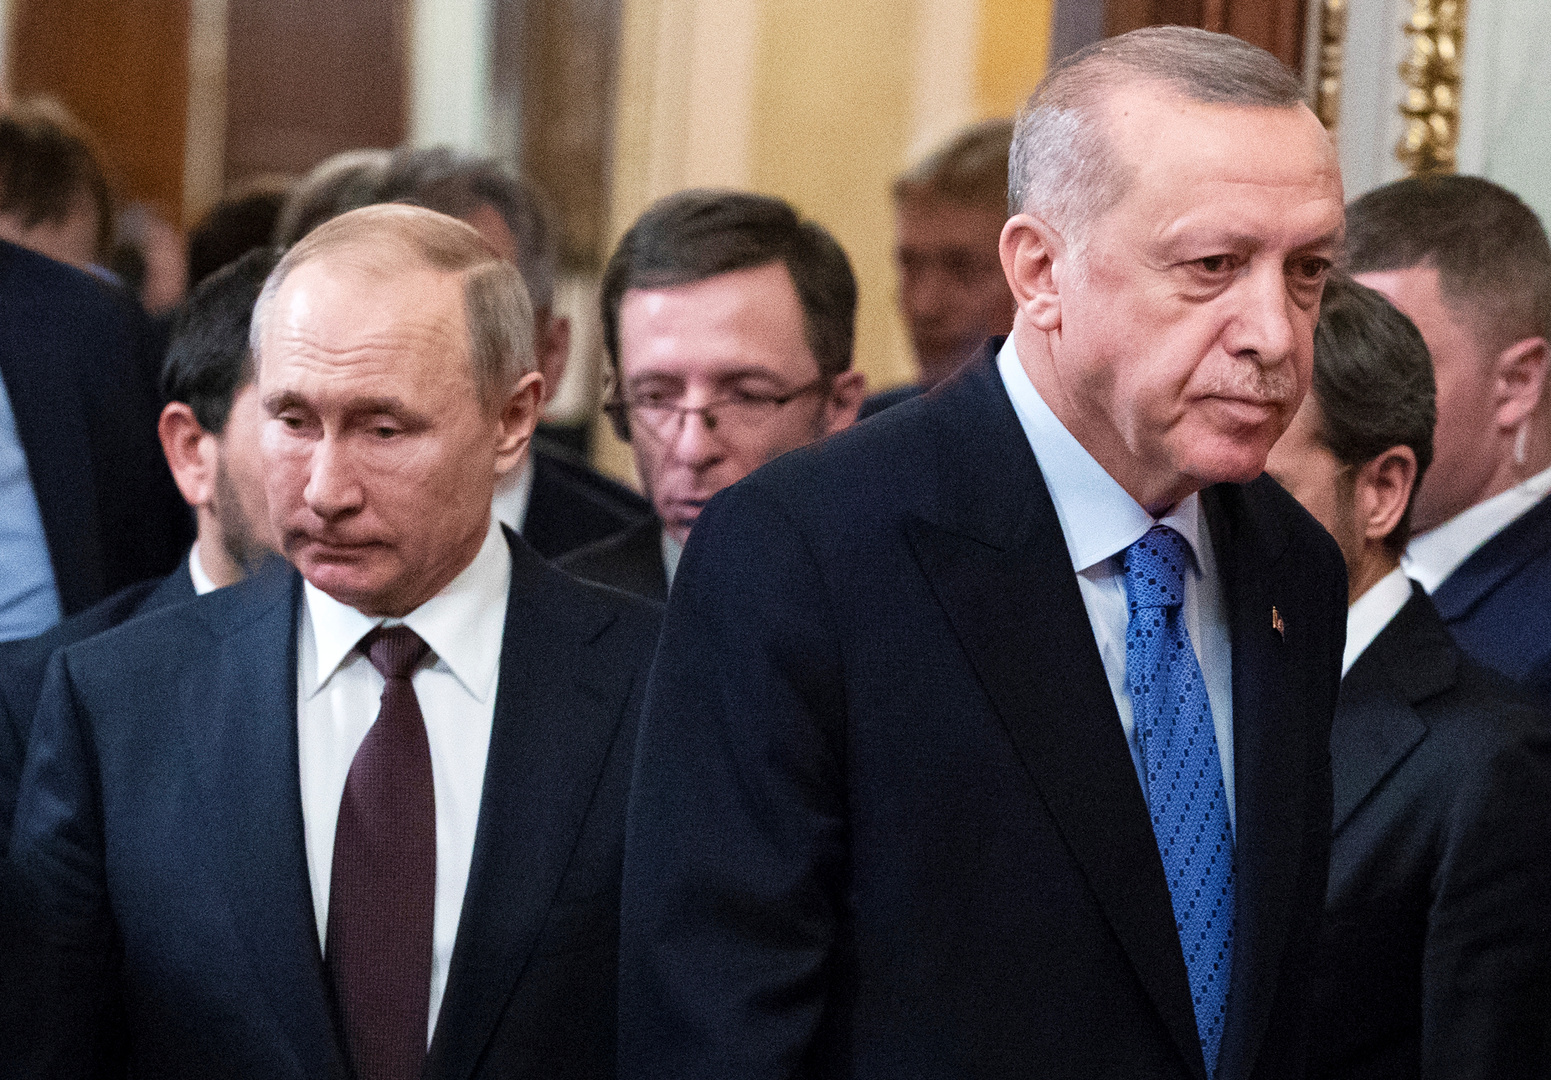 بوتين يبحث مع أردوغان أوكرانيا والبحر الأسود وسوريا وليبيا وقره باغ و